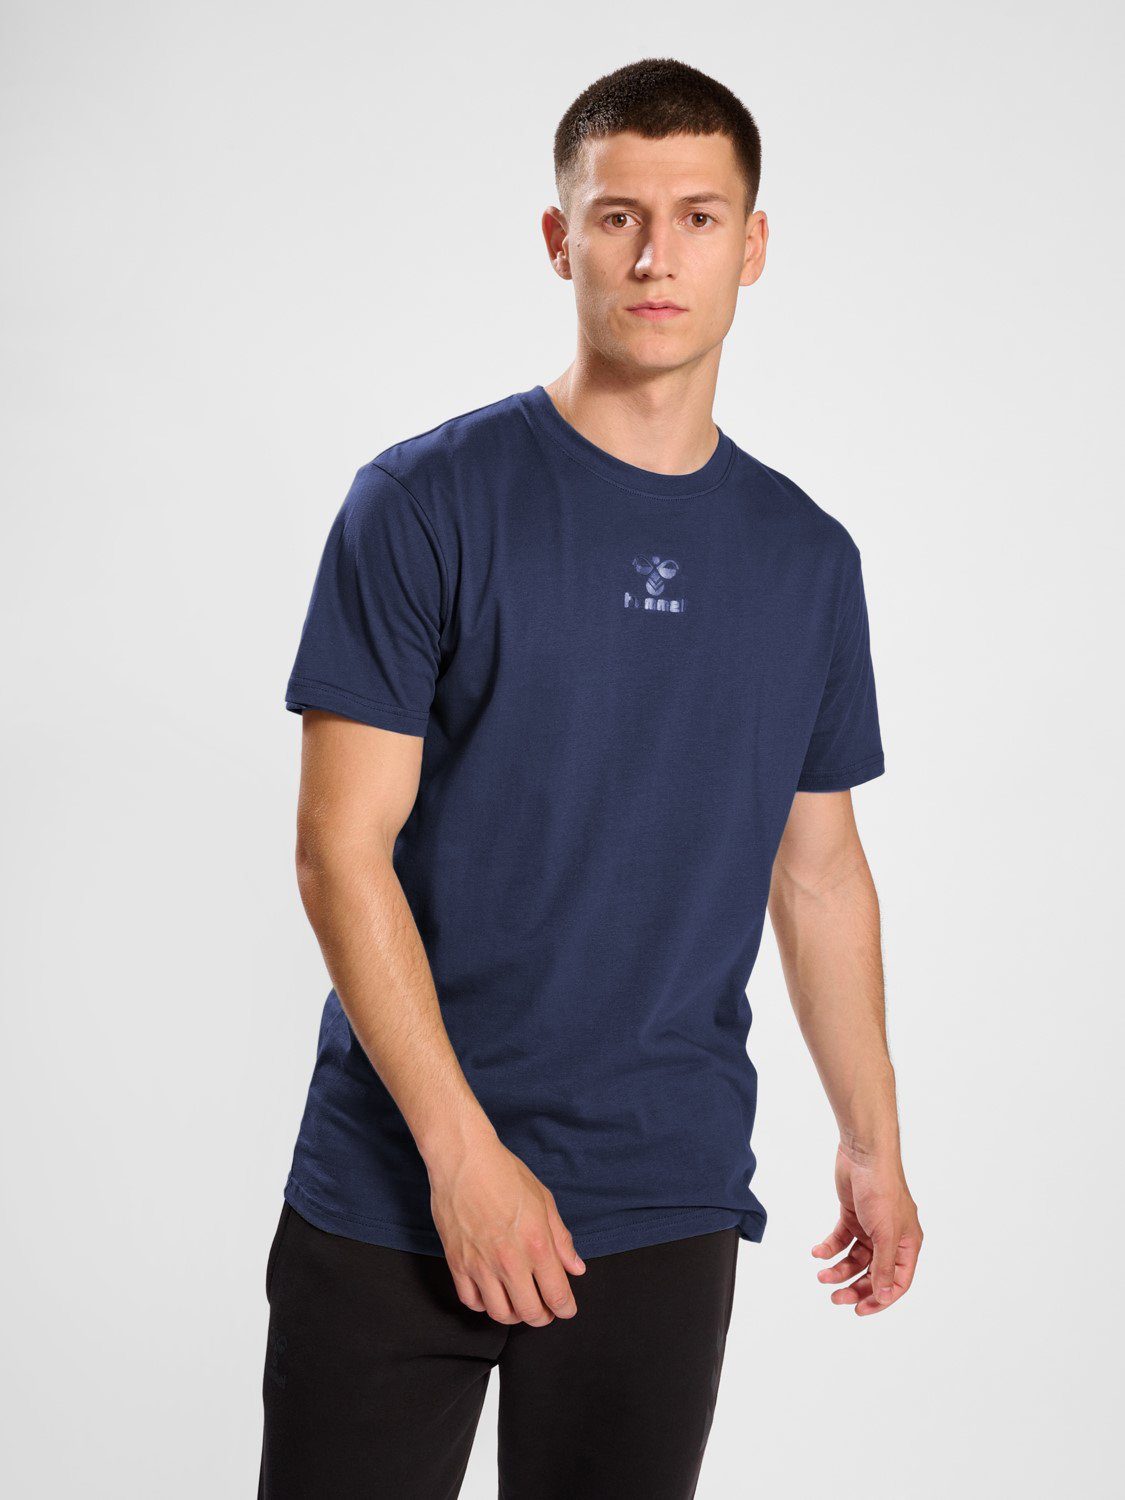 T-Shirt Kurzarm Blau T-Shirt hummel 5788 Funktionsshirt in Sport Jersey